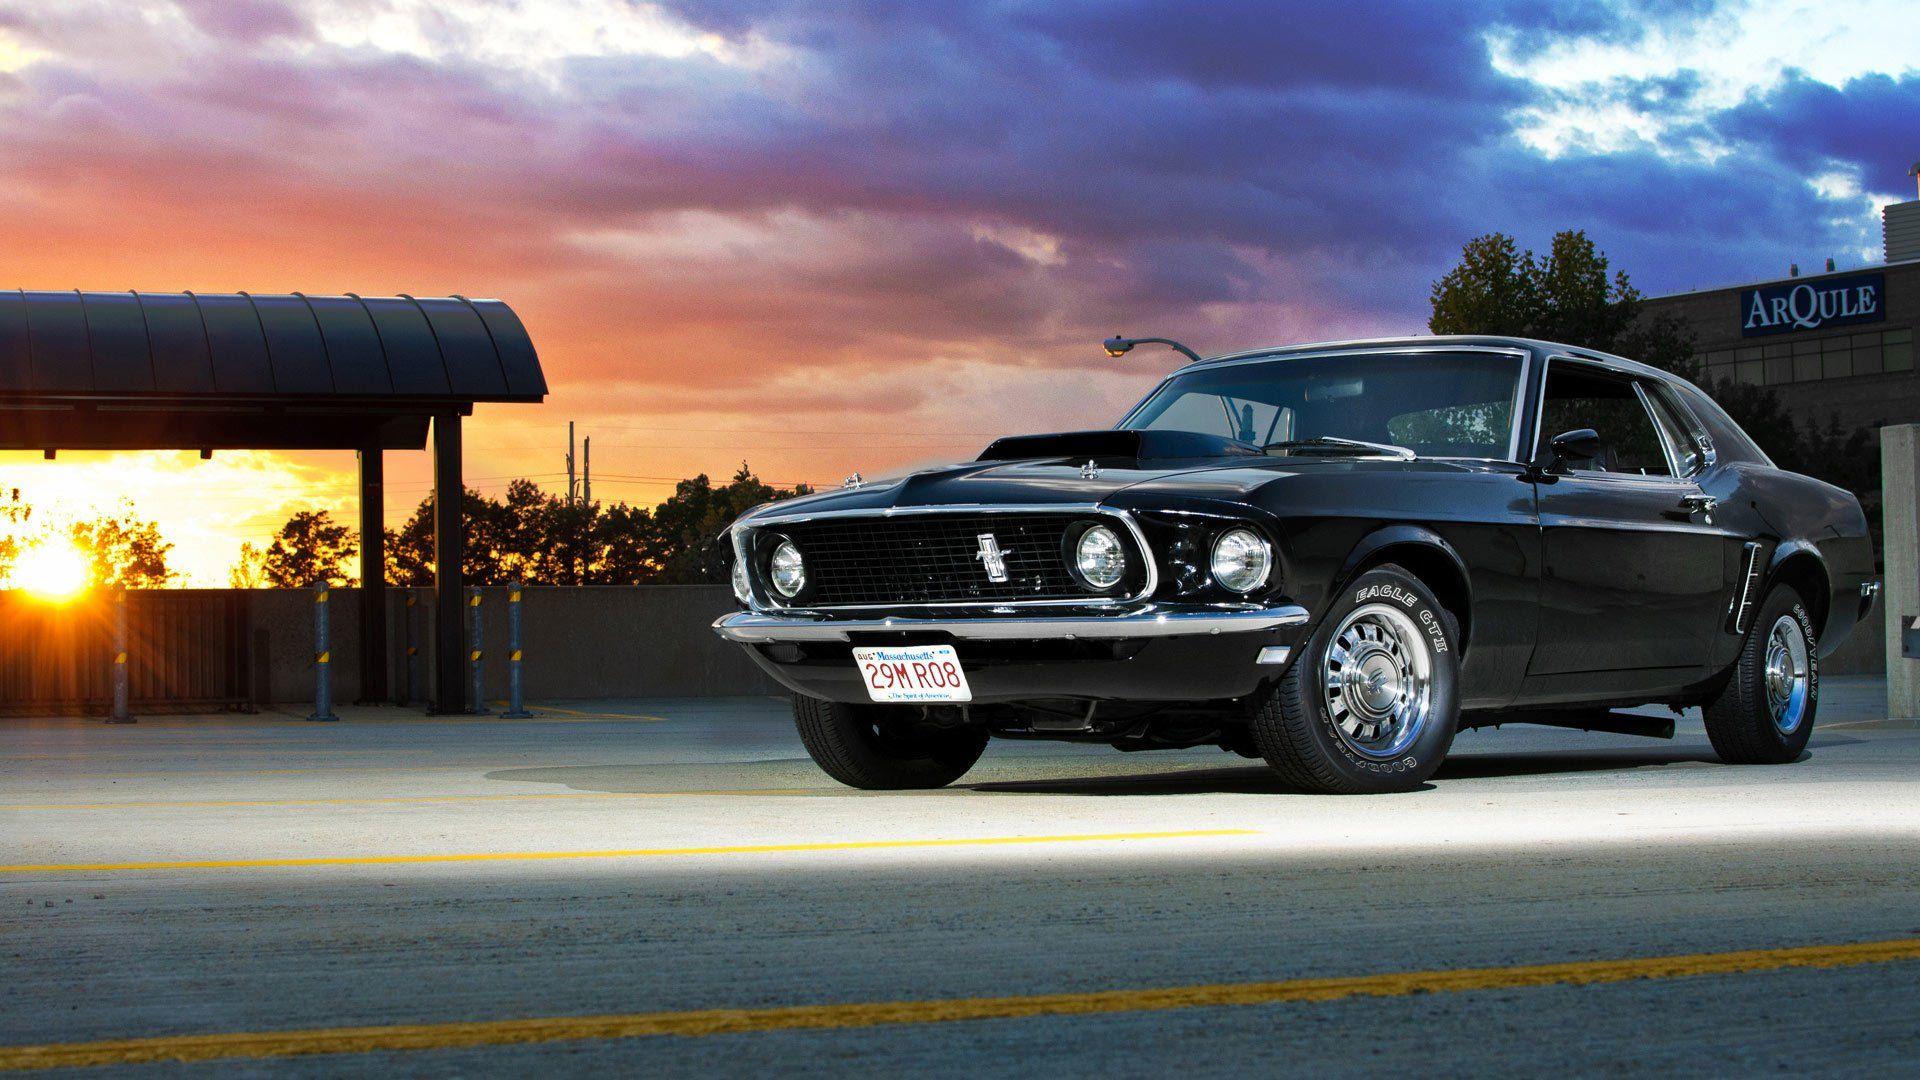 Mustang Car HD Wallpapers - Top Free Mustang Car HD ...